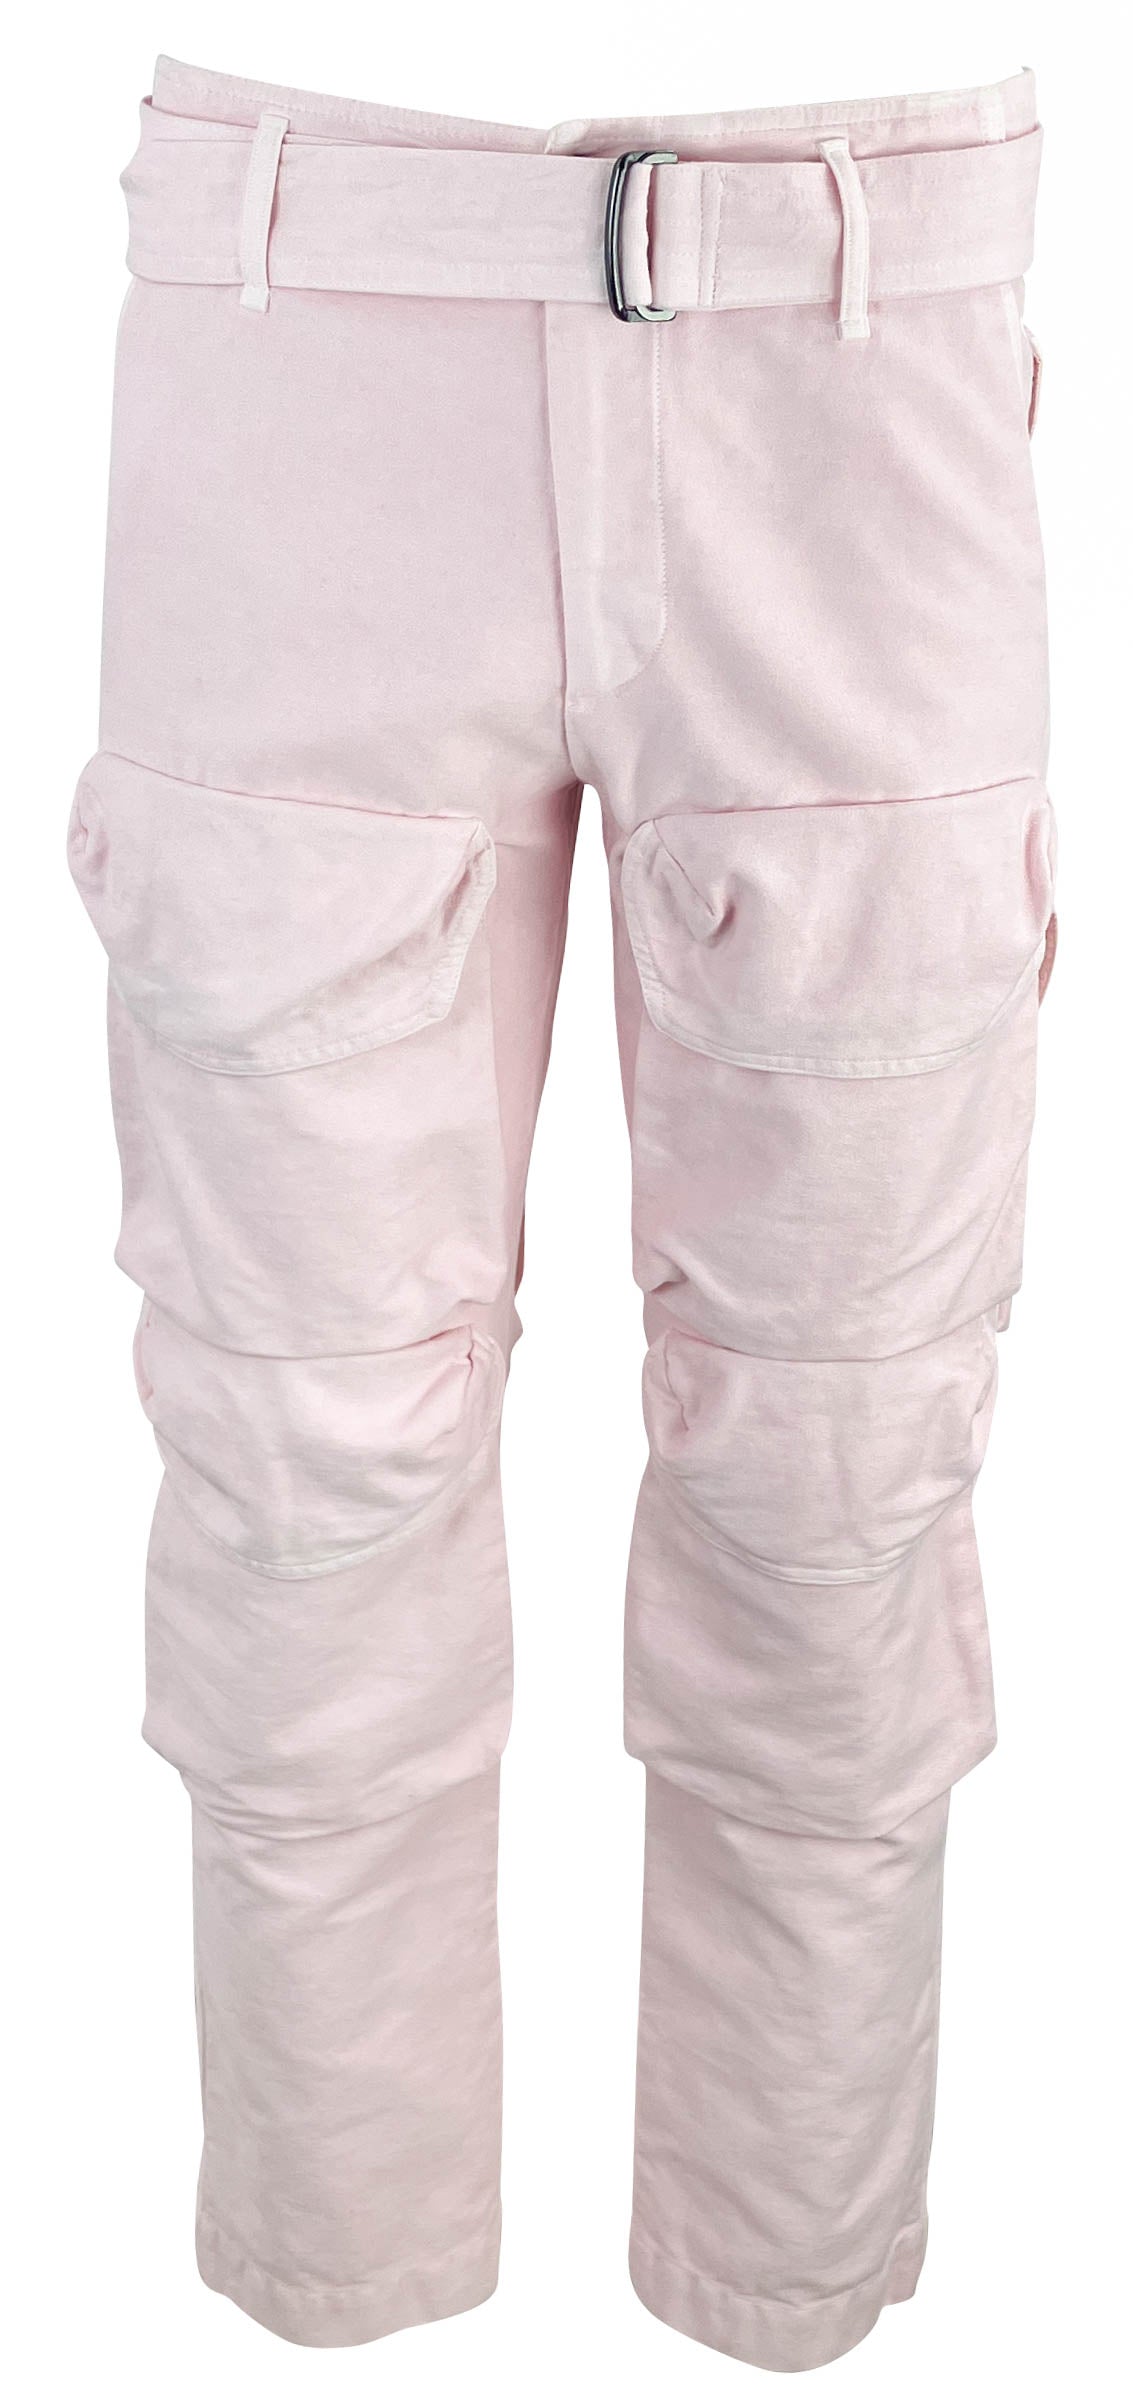 Dries Van Noten Presley Cargo Pants in Pink - Discounts on Dries Van Noten at UAL